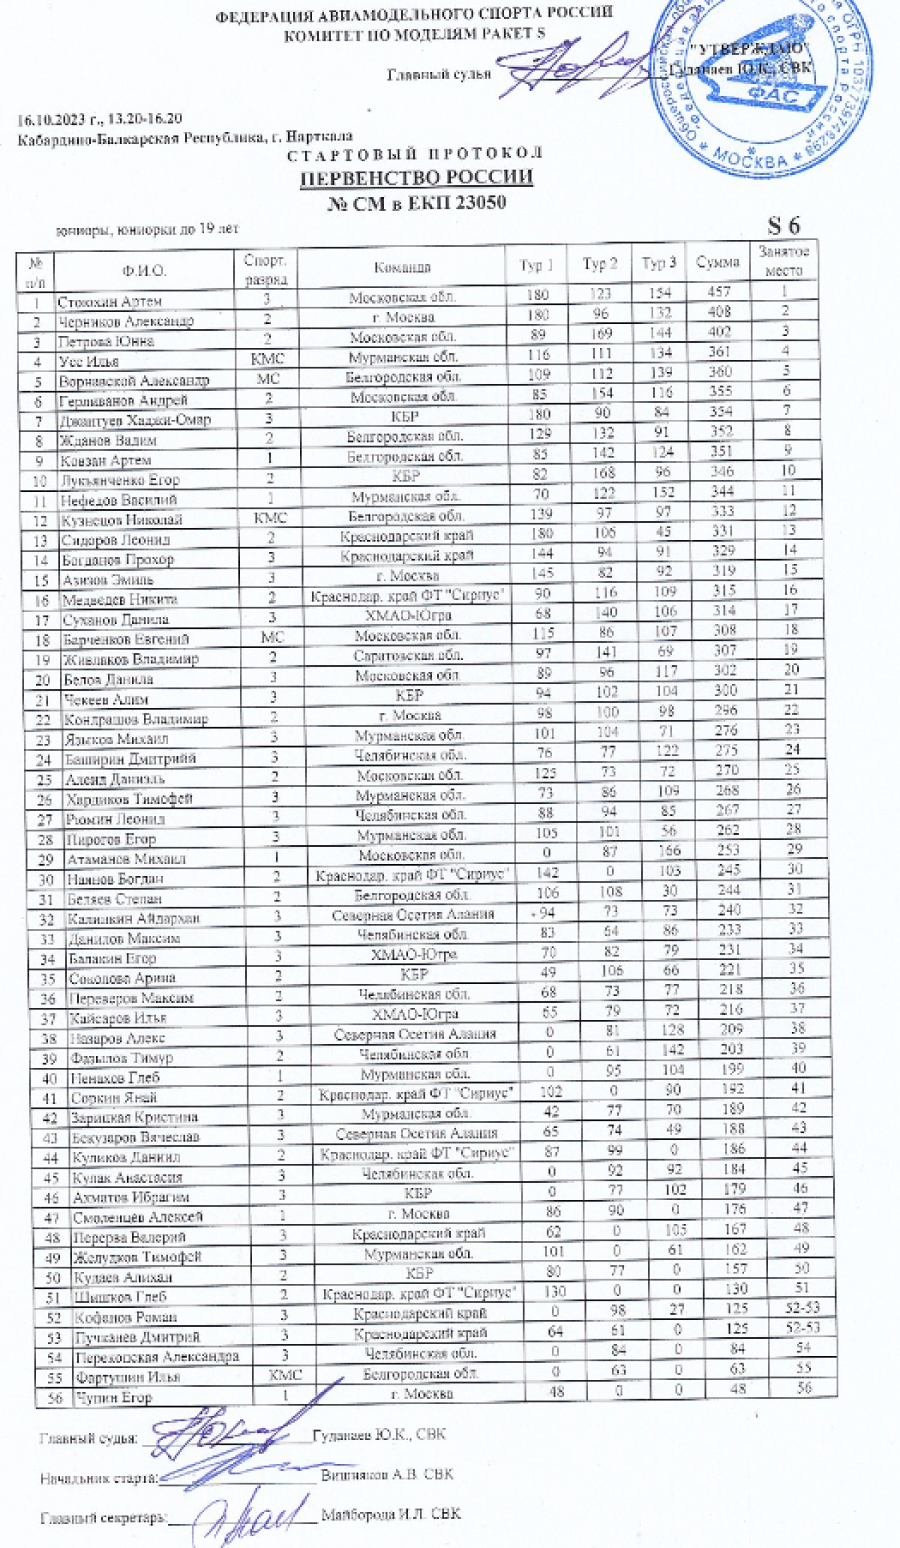 Авиамодельный спорт - Нарткала 2023 класс S - результаты S6